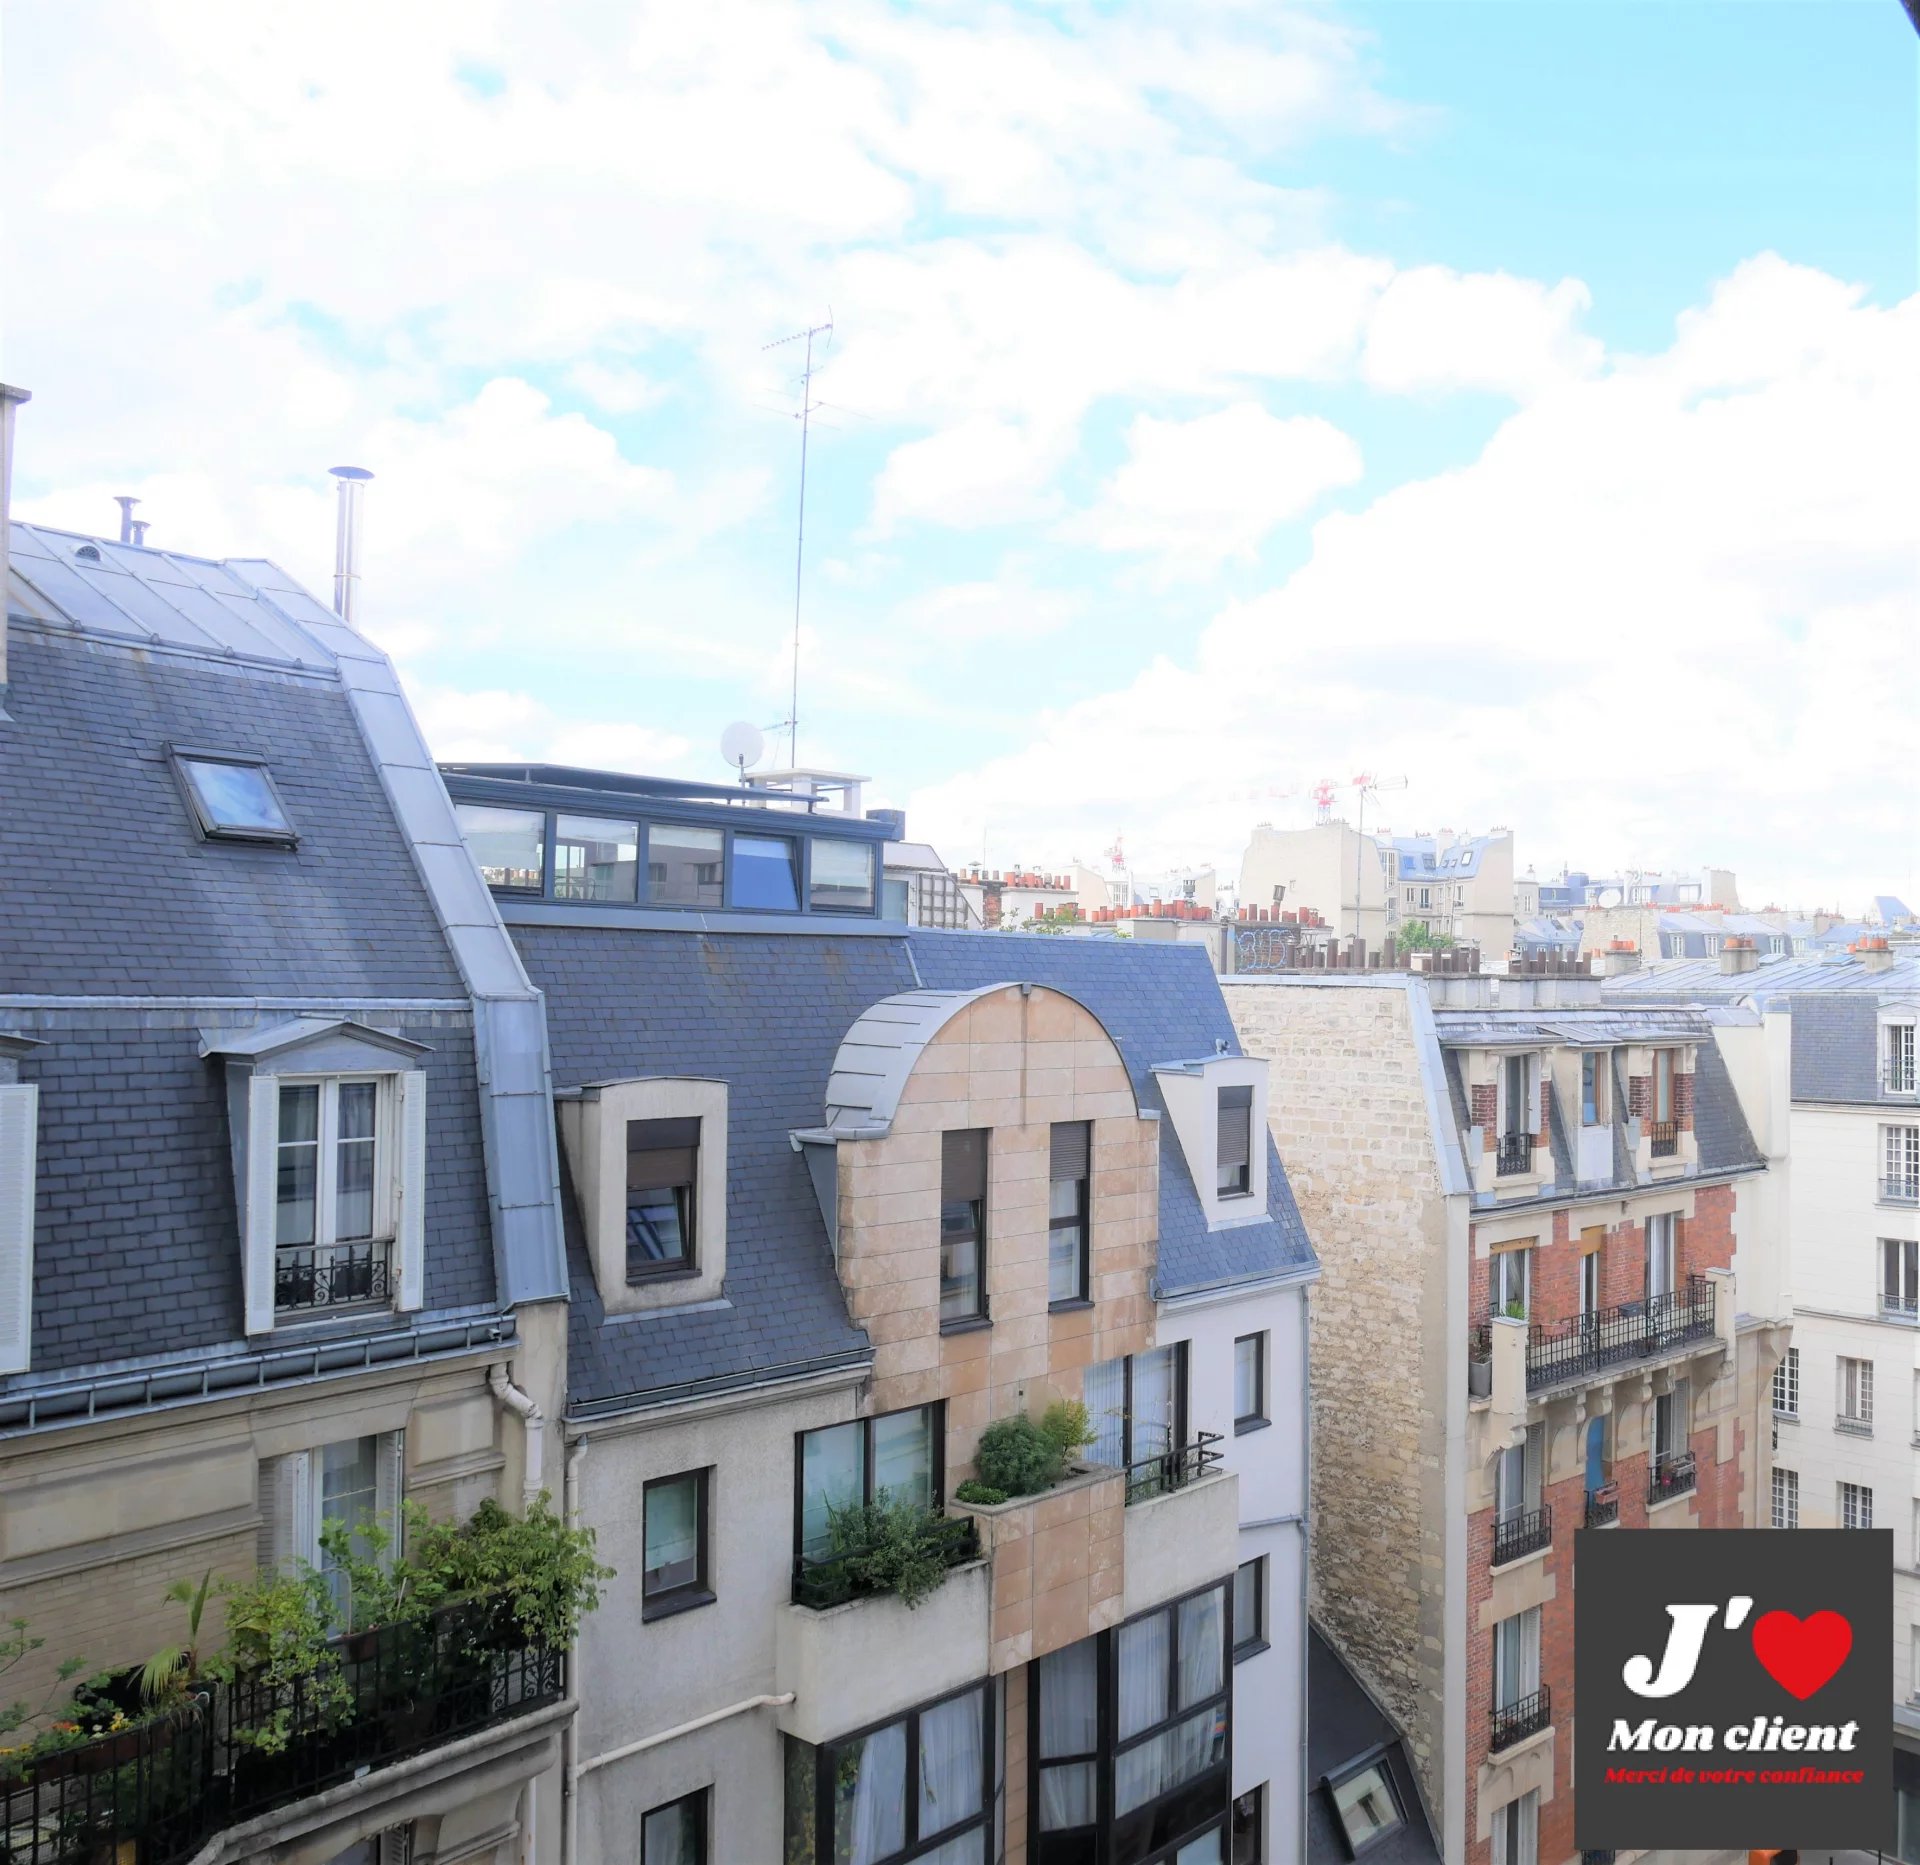 Sale Apartment - Paris 5th (Paris 5ème)